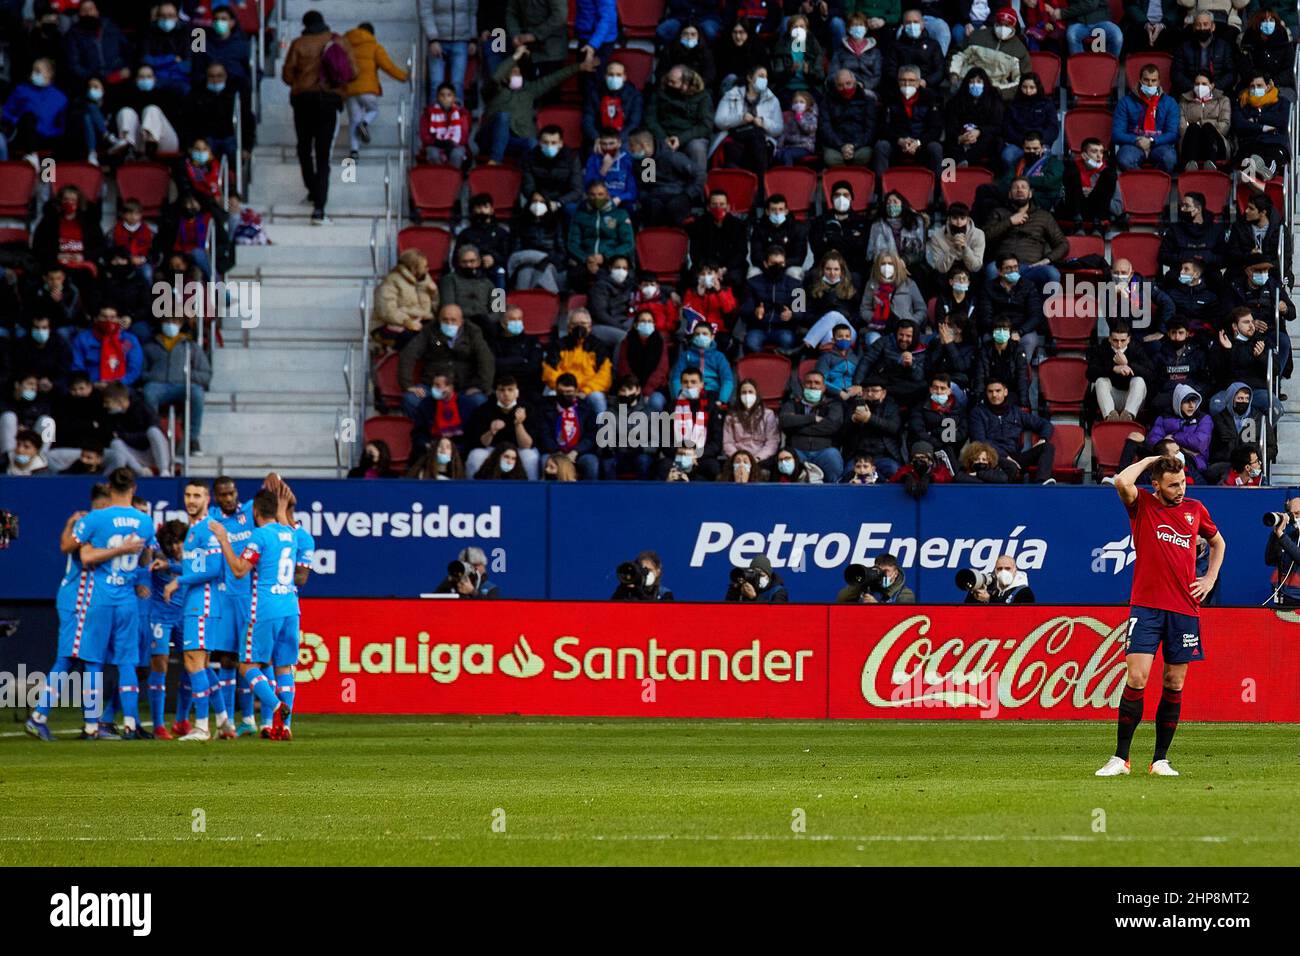 Die Spieler von Atletico de Madrid feiern das Tor, das Correa während des La Liga Santander-Spiels zwischen CA Osasuna y Club Atletico de Madrid (0-3) im Estadio El Sadar in Pamplona, Spanien, erzielt hat. Kredit: Iñigo Alzugaray/Alamy Live Nachrichten Stockfoto